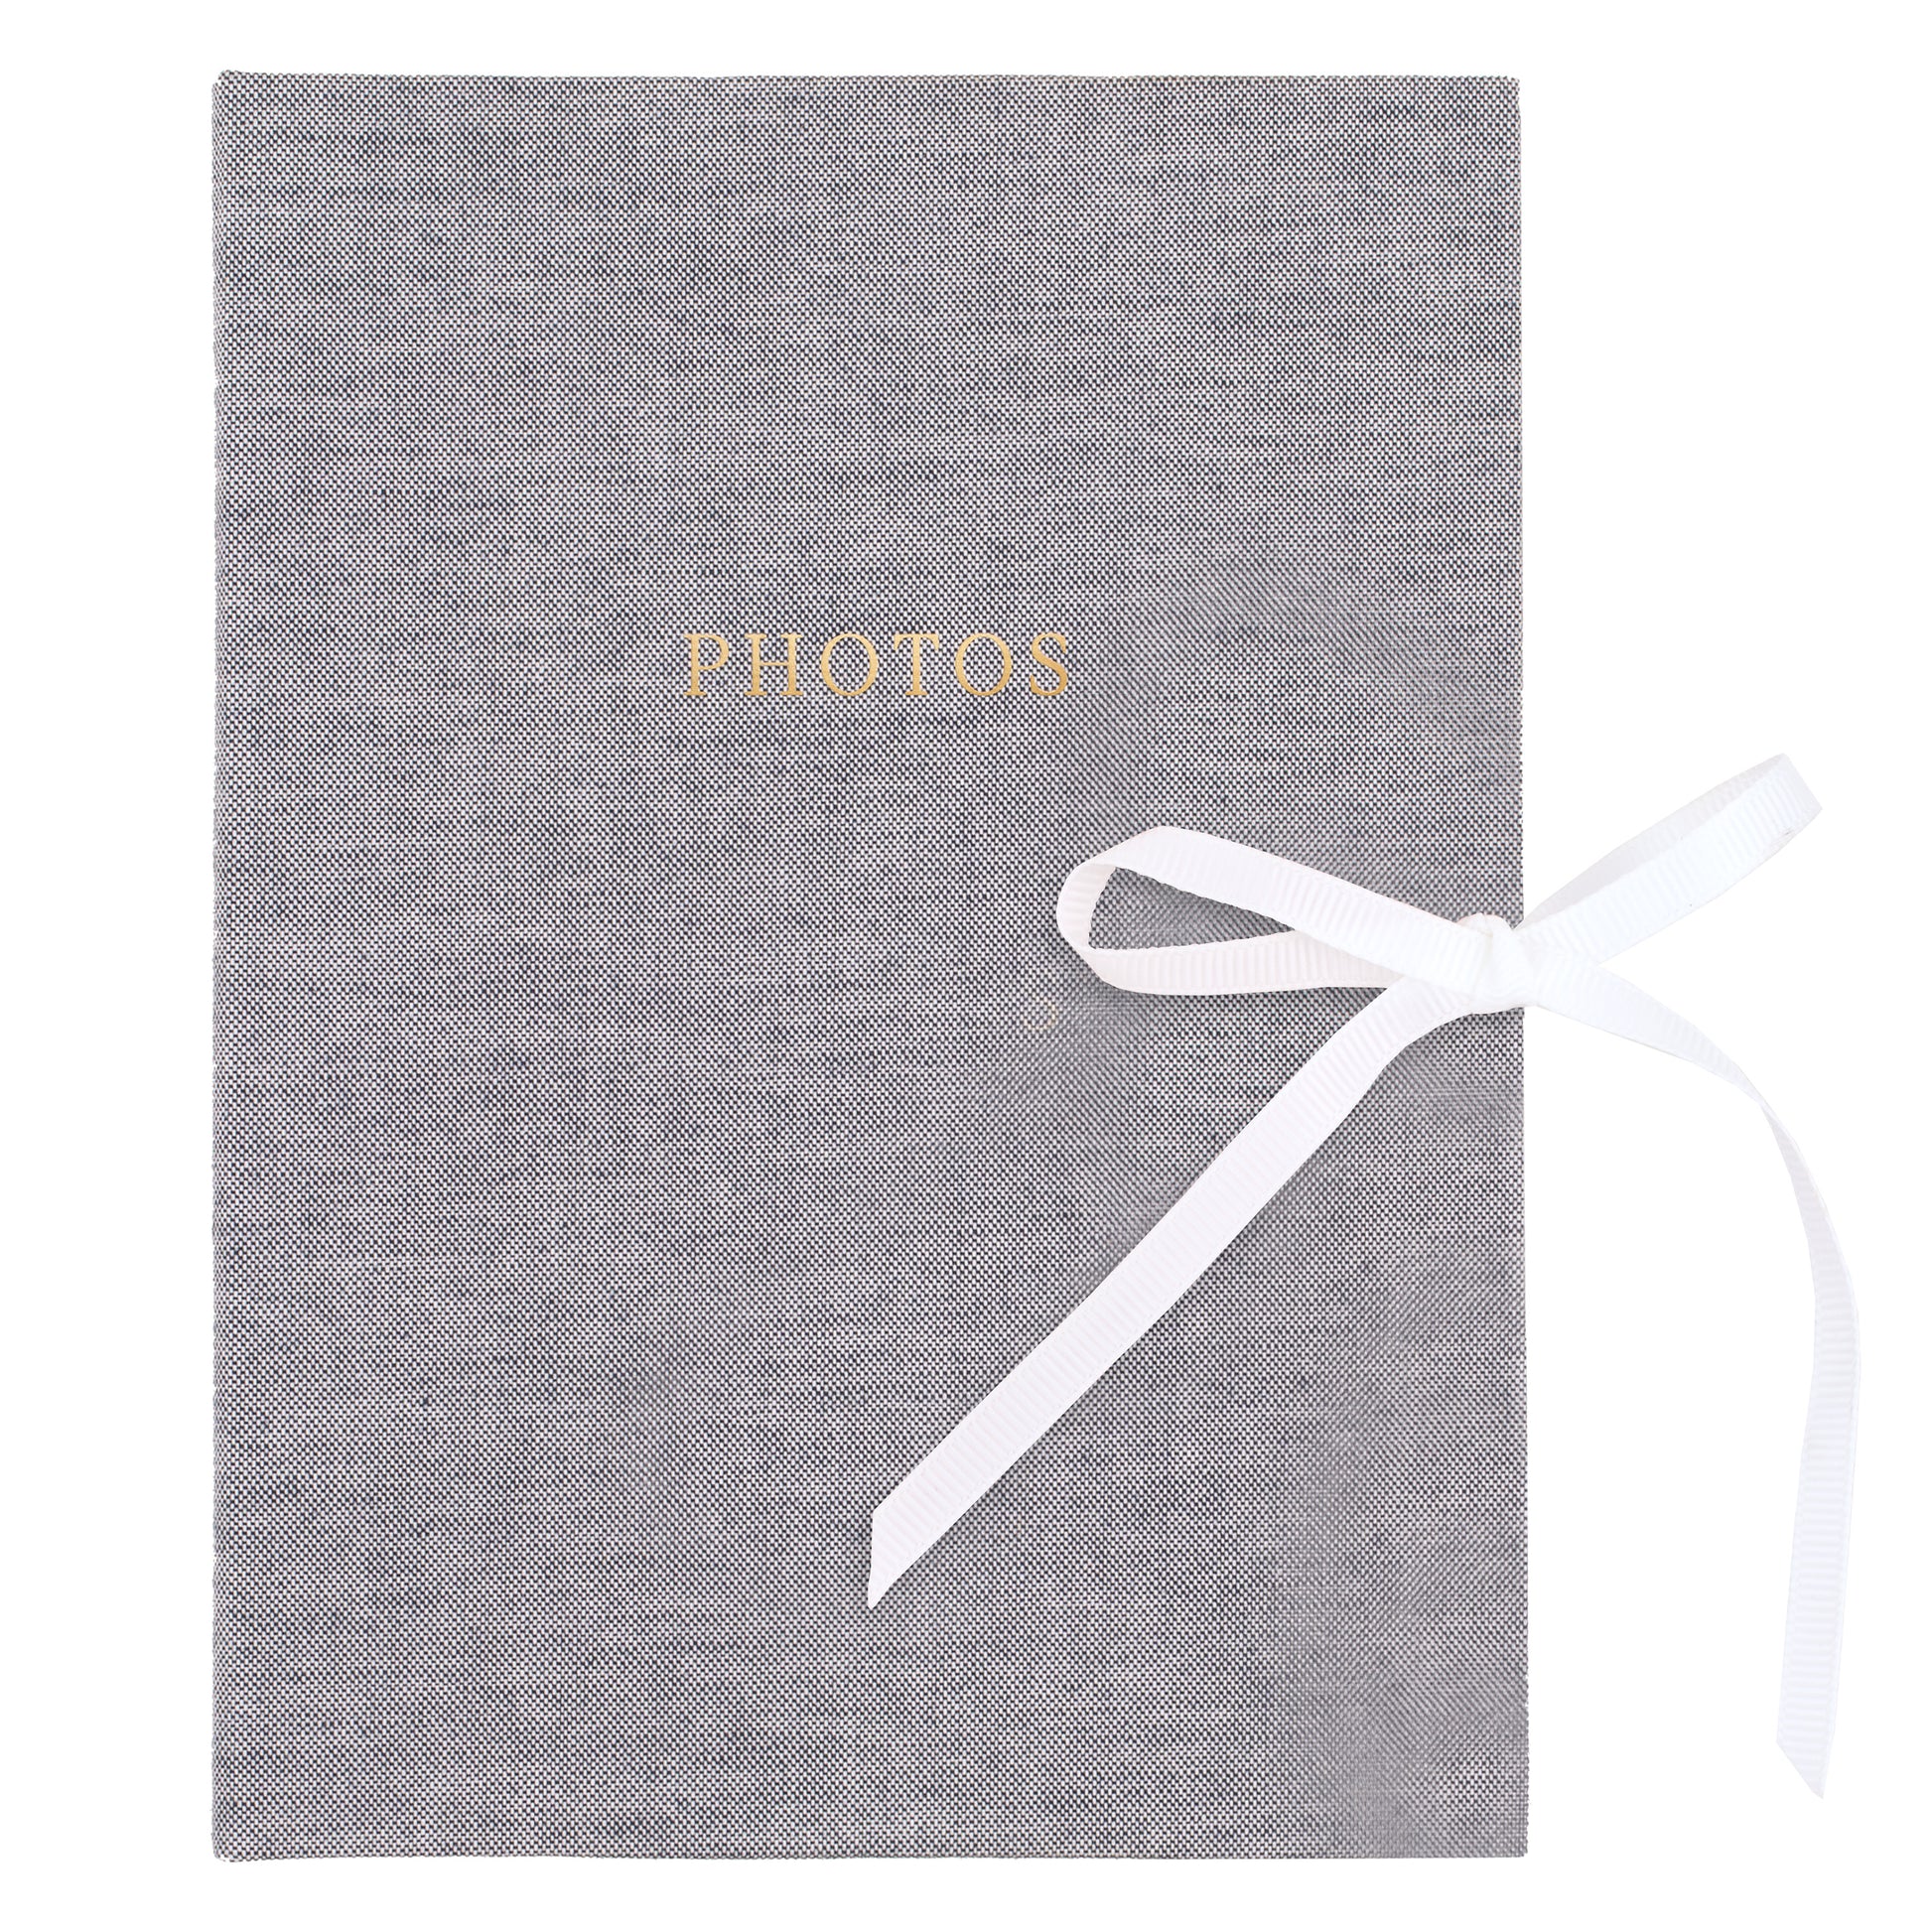 Chambray photo album with white ribbon tie